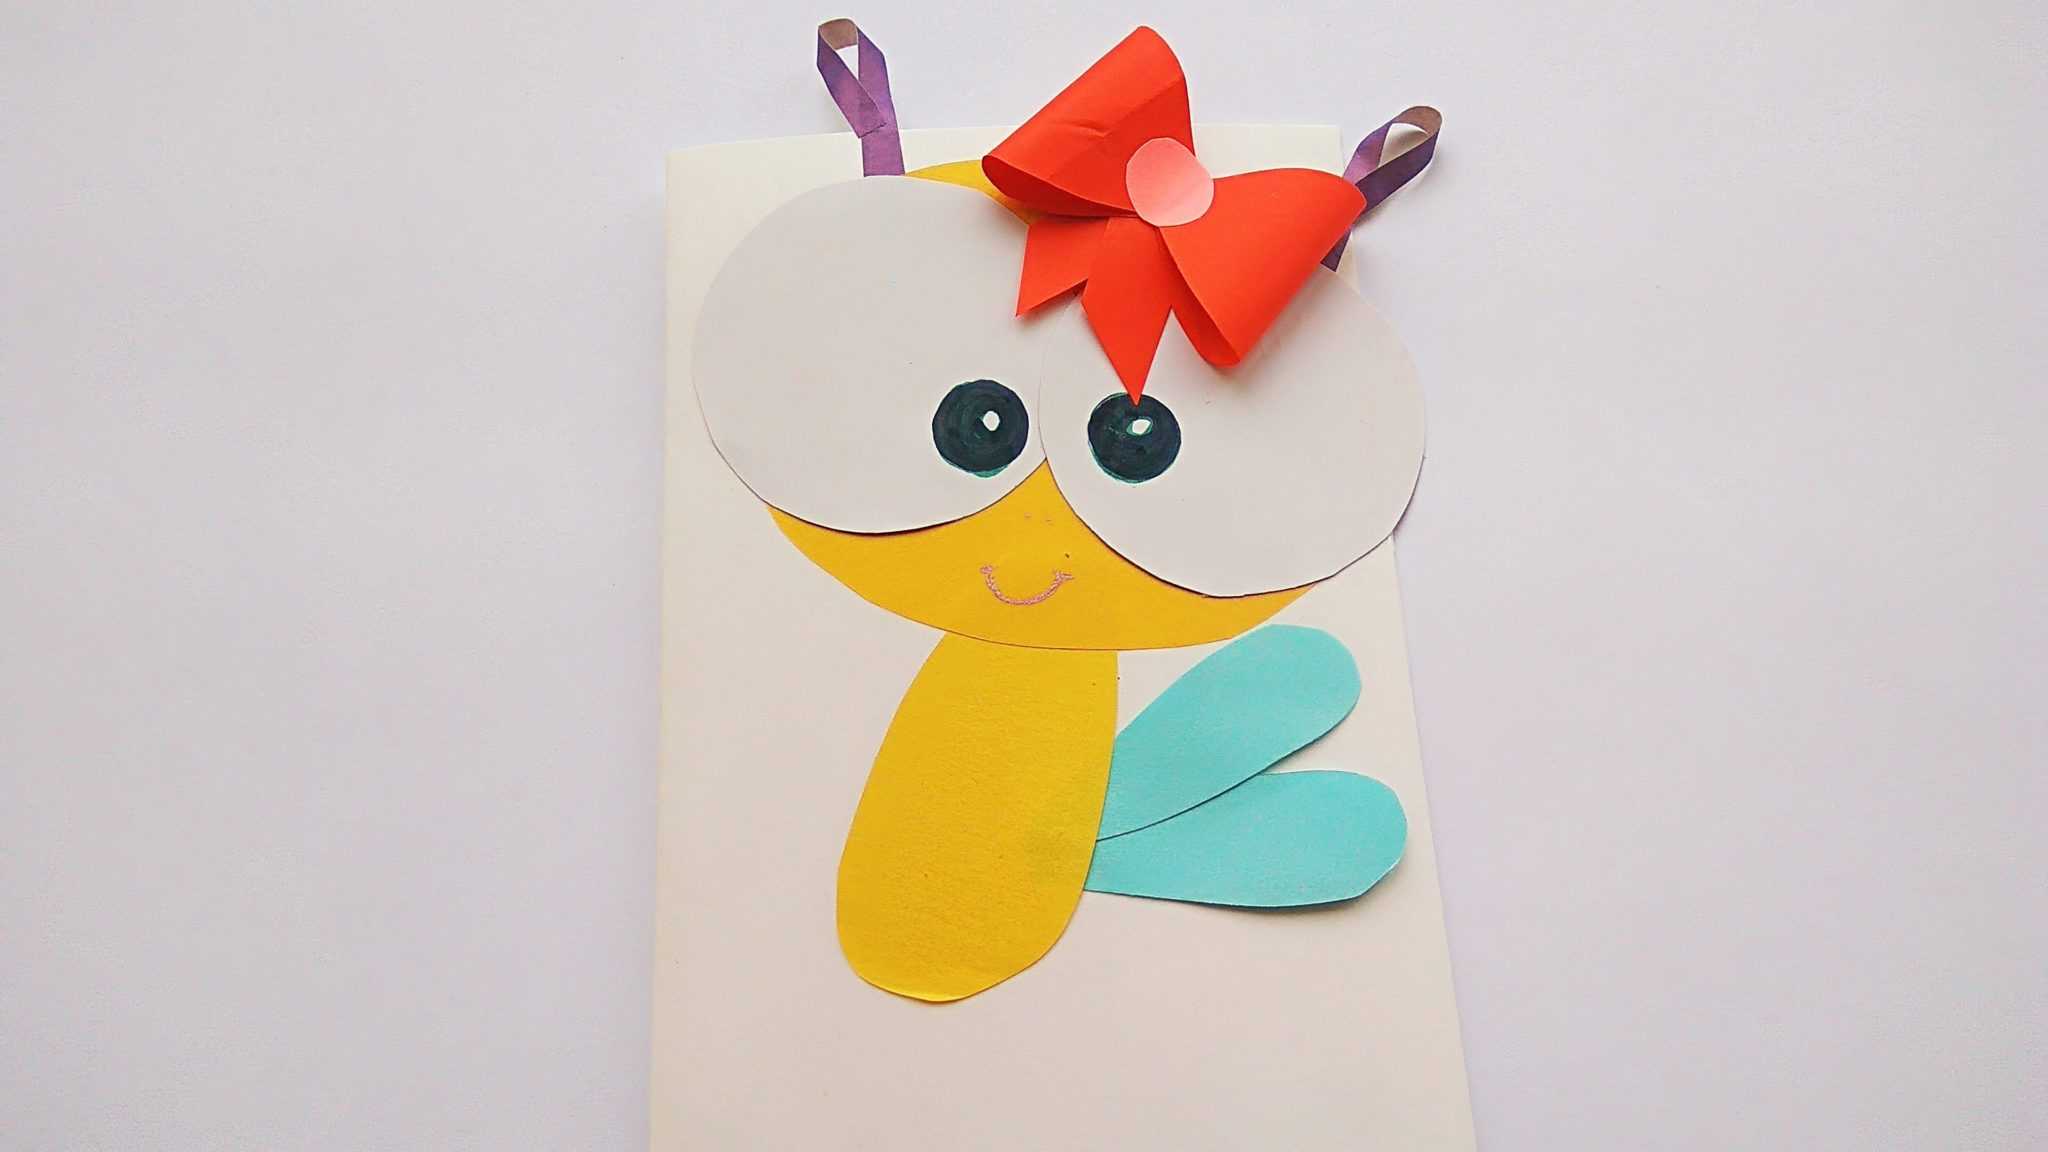 Аппликация бабочка: легкие детские мастер-классы из цветной бумаги, фетра, квиллинг и других подручных материалов